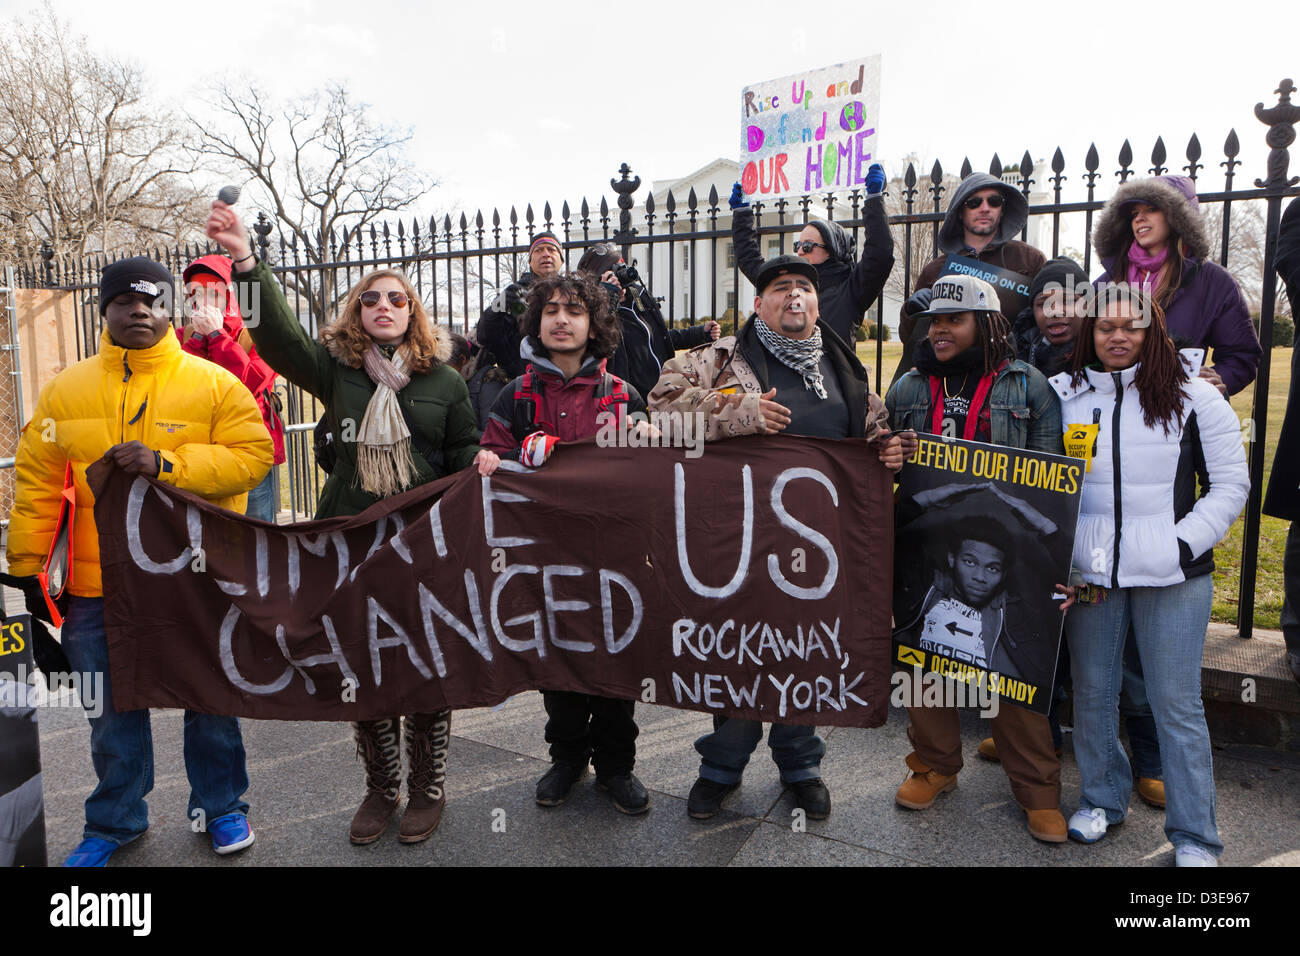 Les militants protestent contre les changements climatiques - Washington, DC USA Banque D'Images